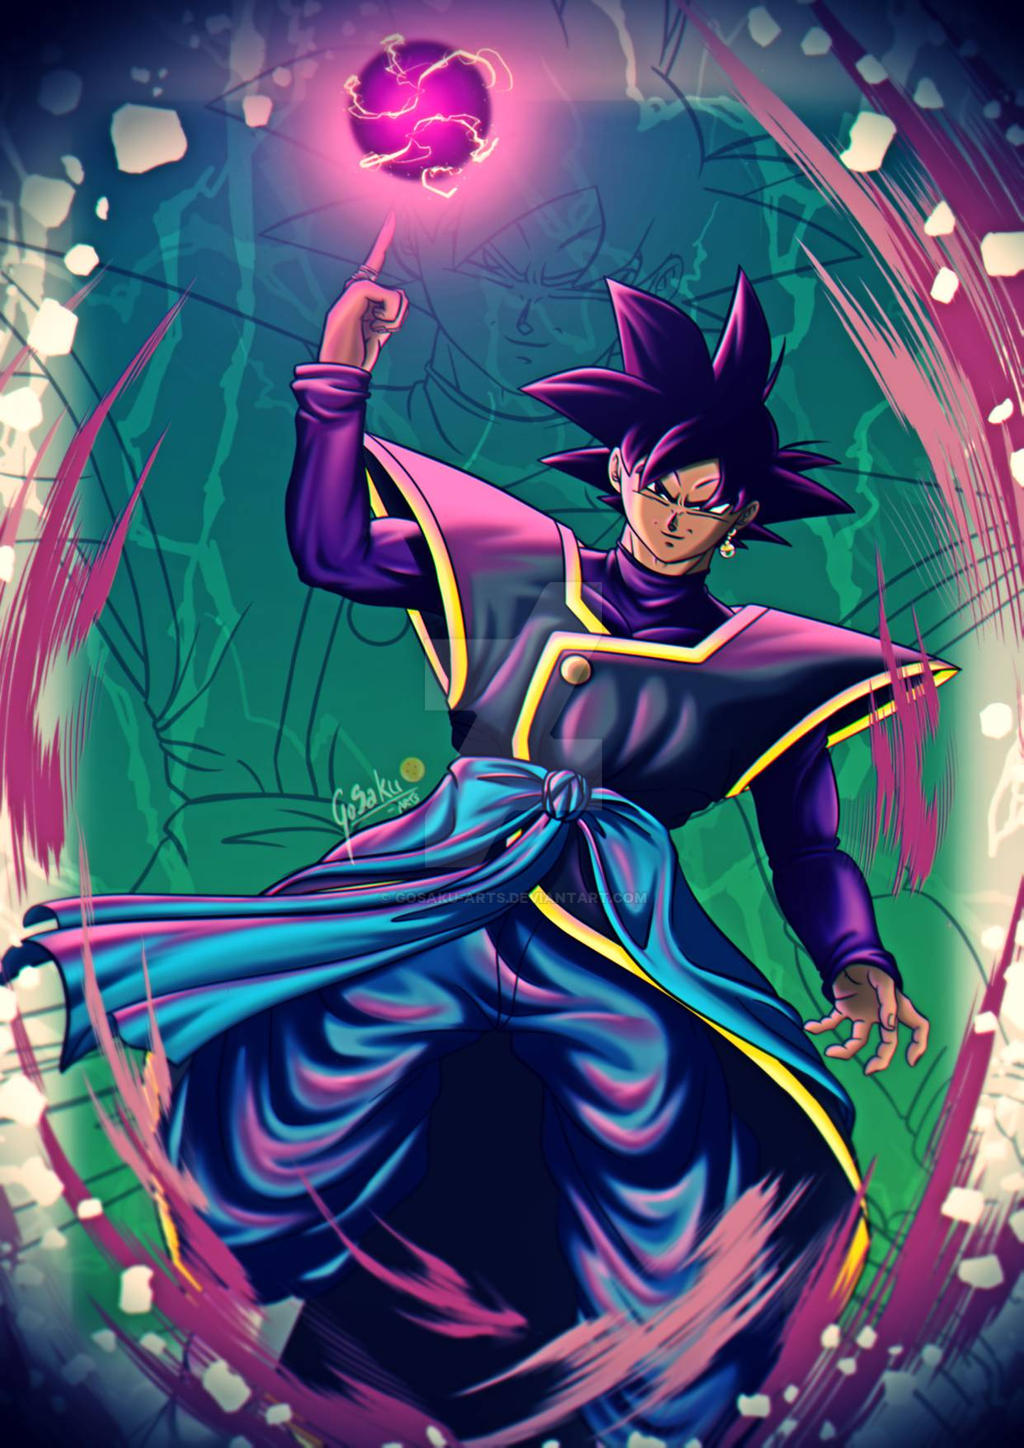 jern Faial helgen Goku Black in Zamasu style by GoSaKu-Arts on DeviantArt